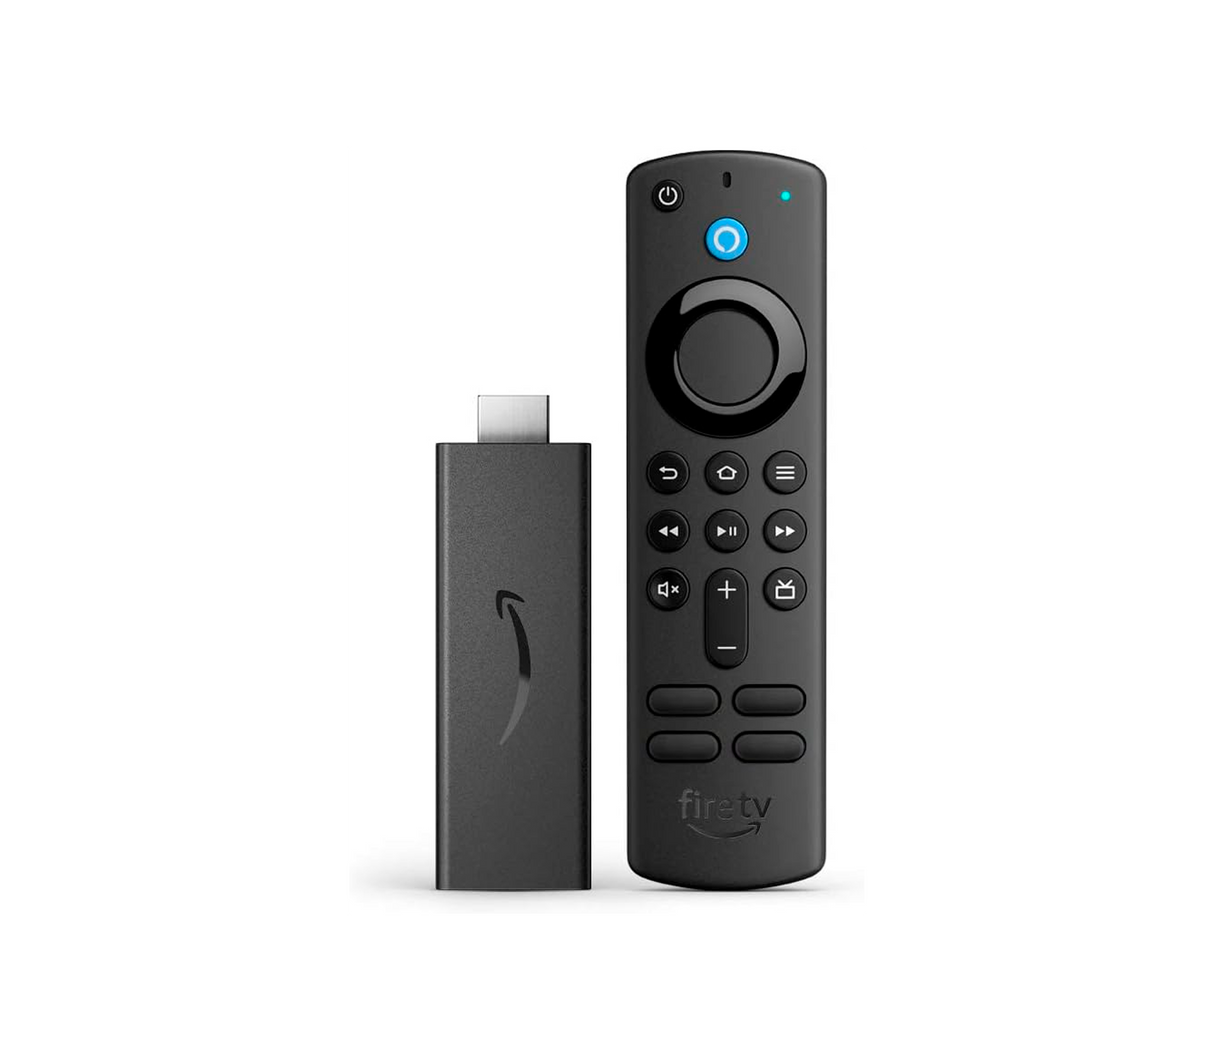 Fire tv stick Amazon con Alexa Voice Remote incluye controles de TV